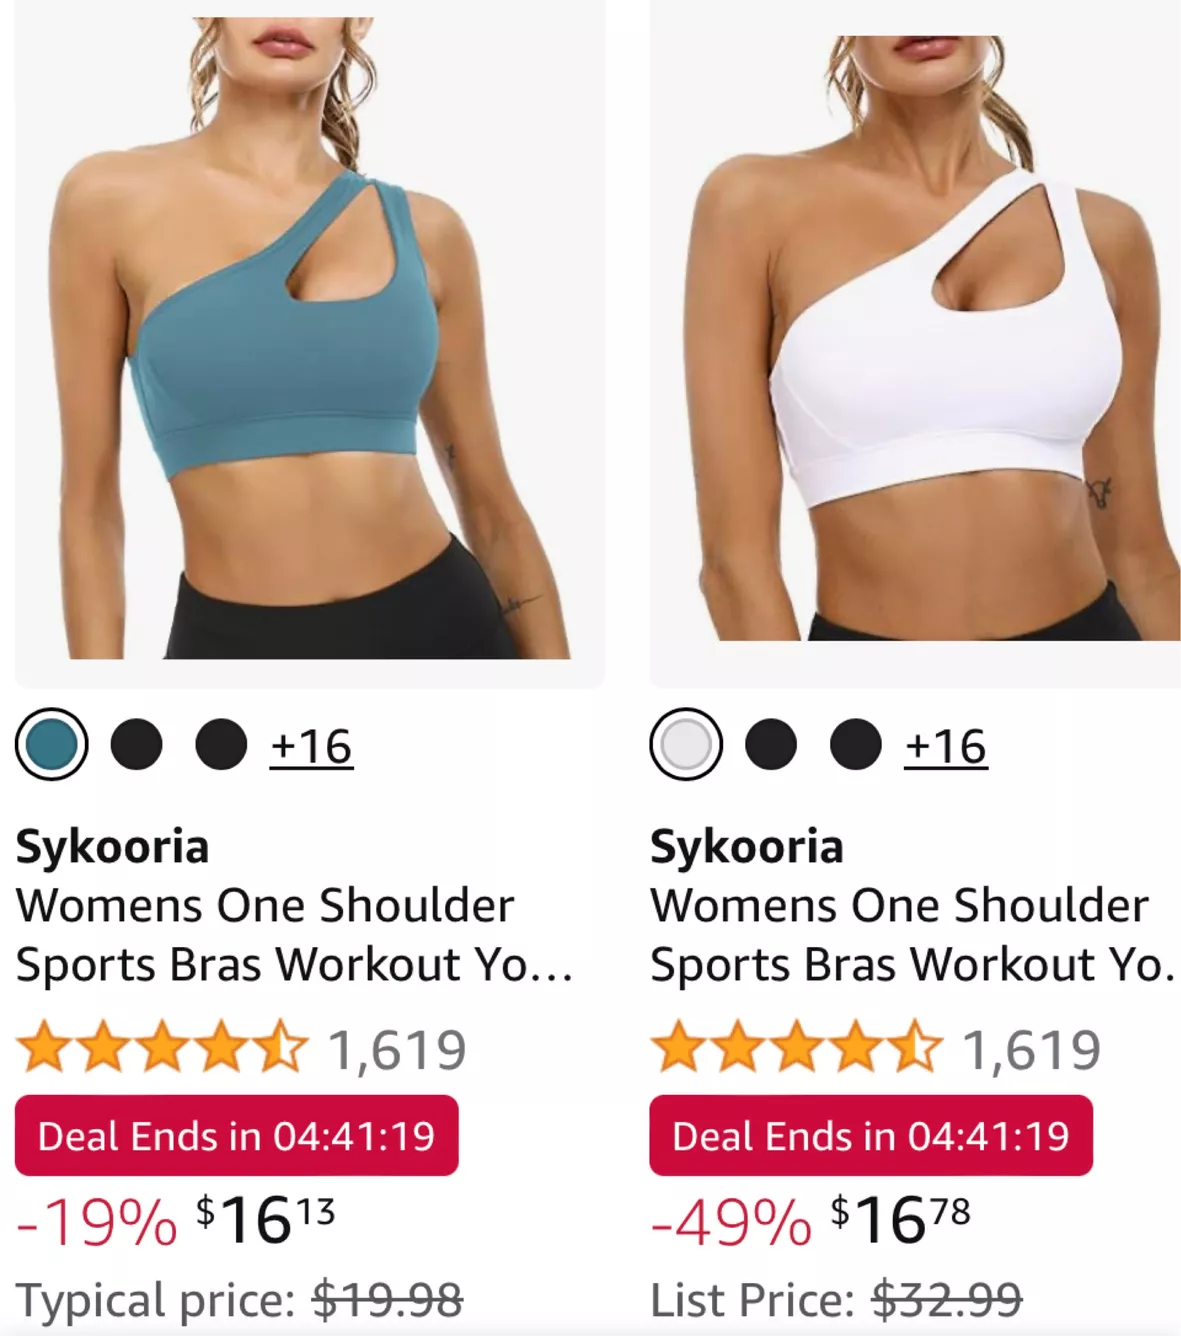 Buy Sykooria Womens One Shoulder Sports Bras Workout Yoga Bra Sexy